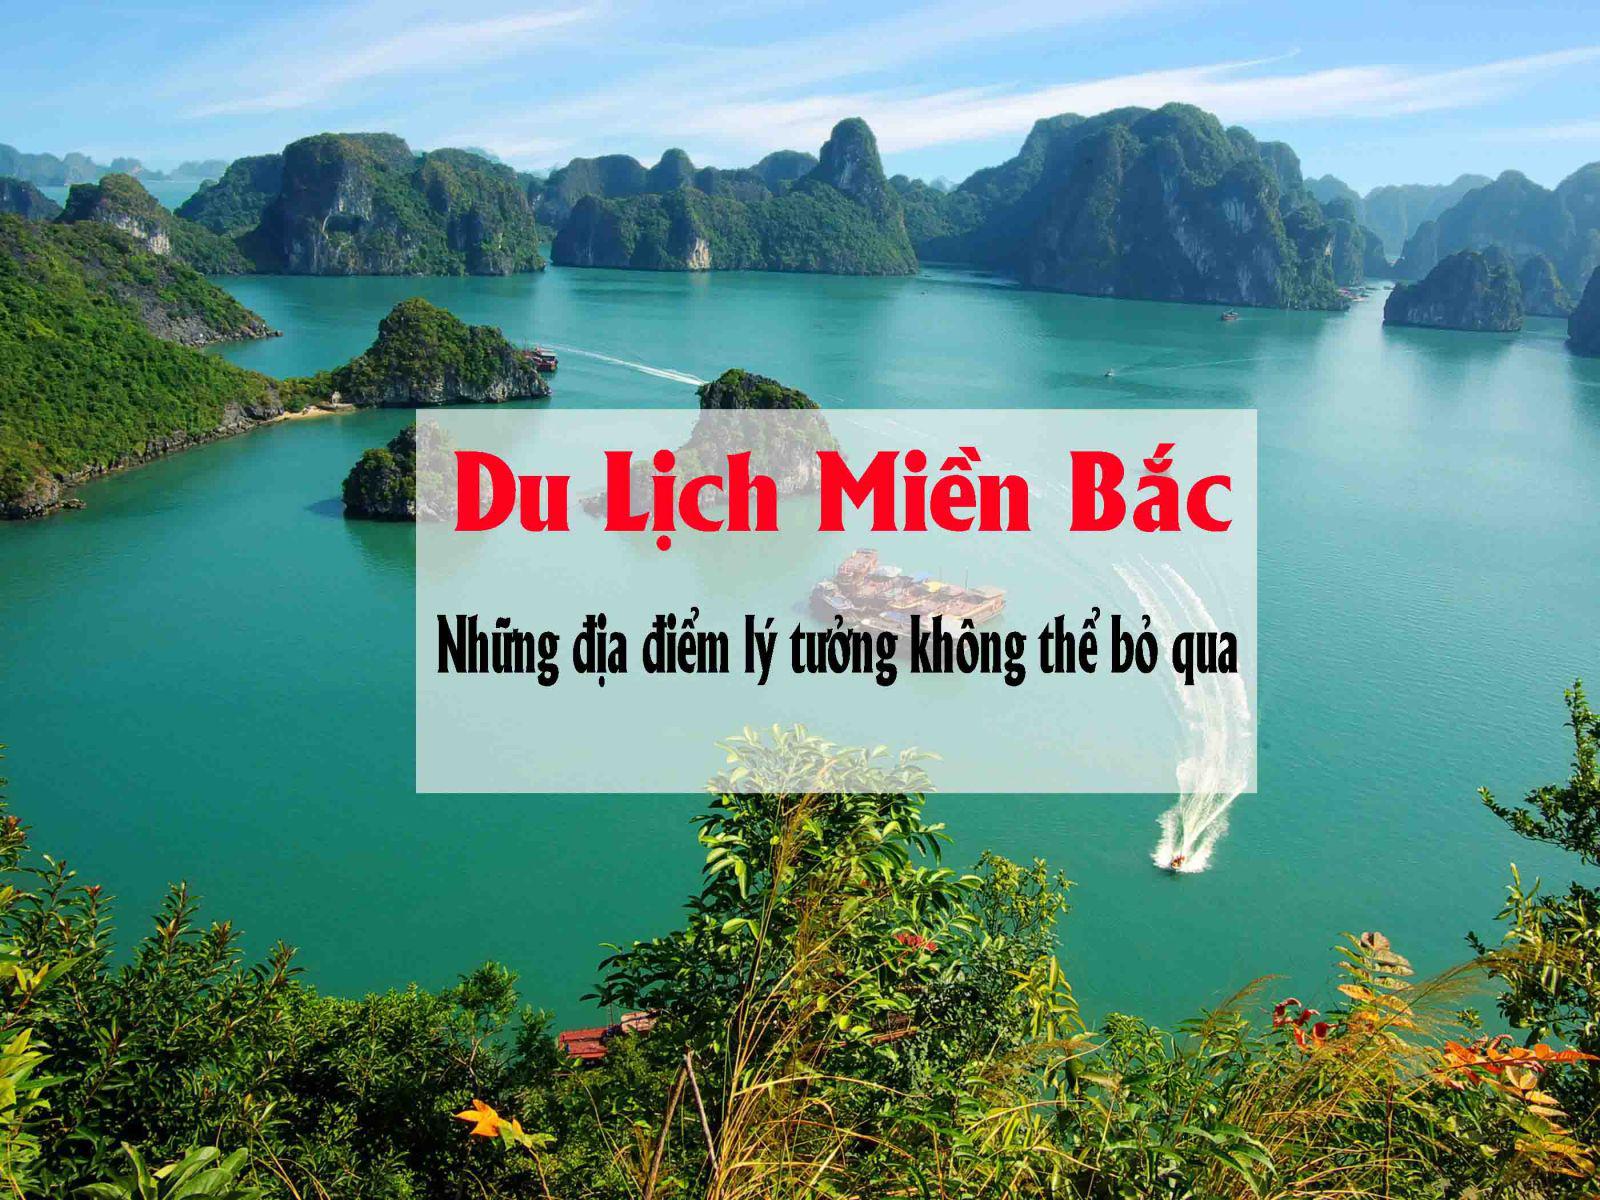 Hồ Chí Minh - Hà Nội - Hạ Long - Ninh Bình 4 Ngày 3 Đêm